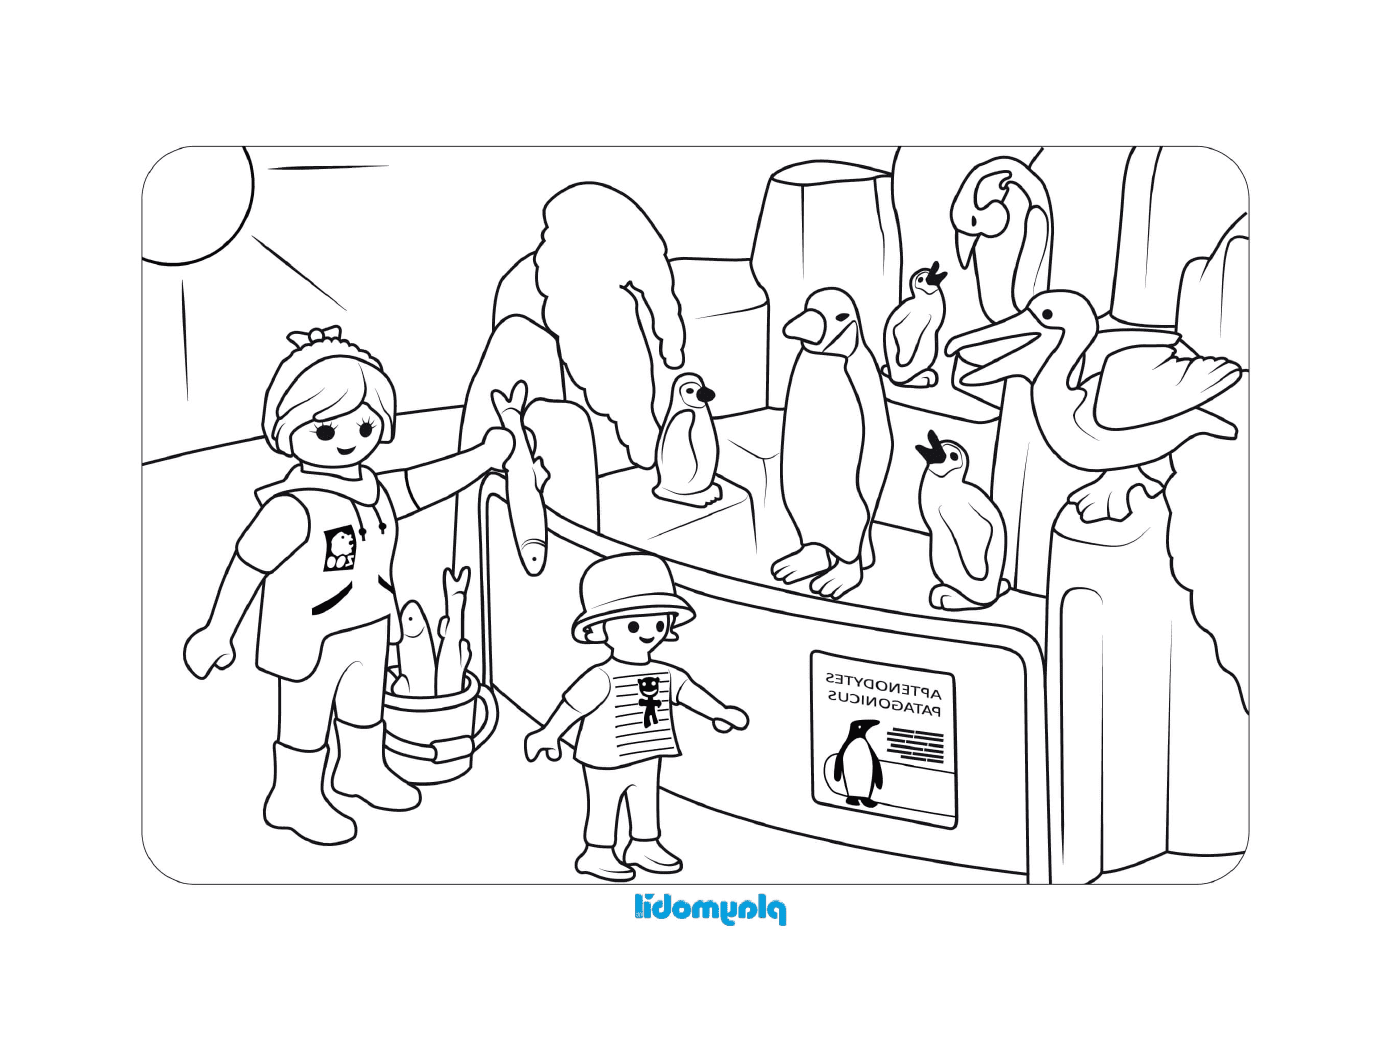  Многие пингвины в этой сцене Playmobile 